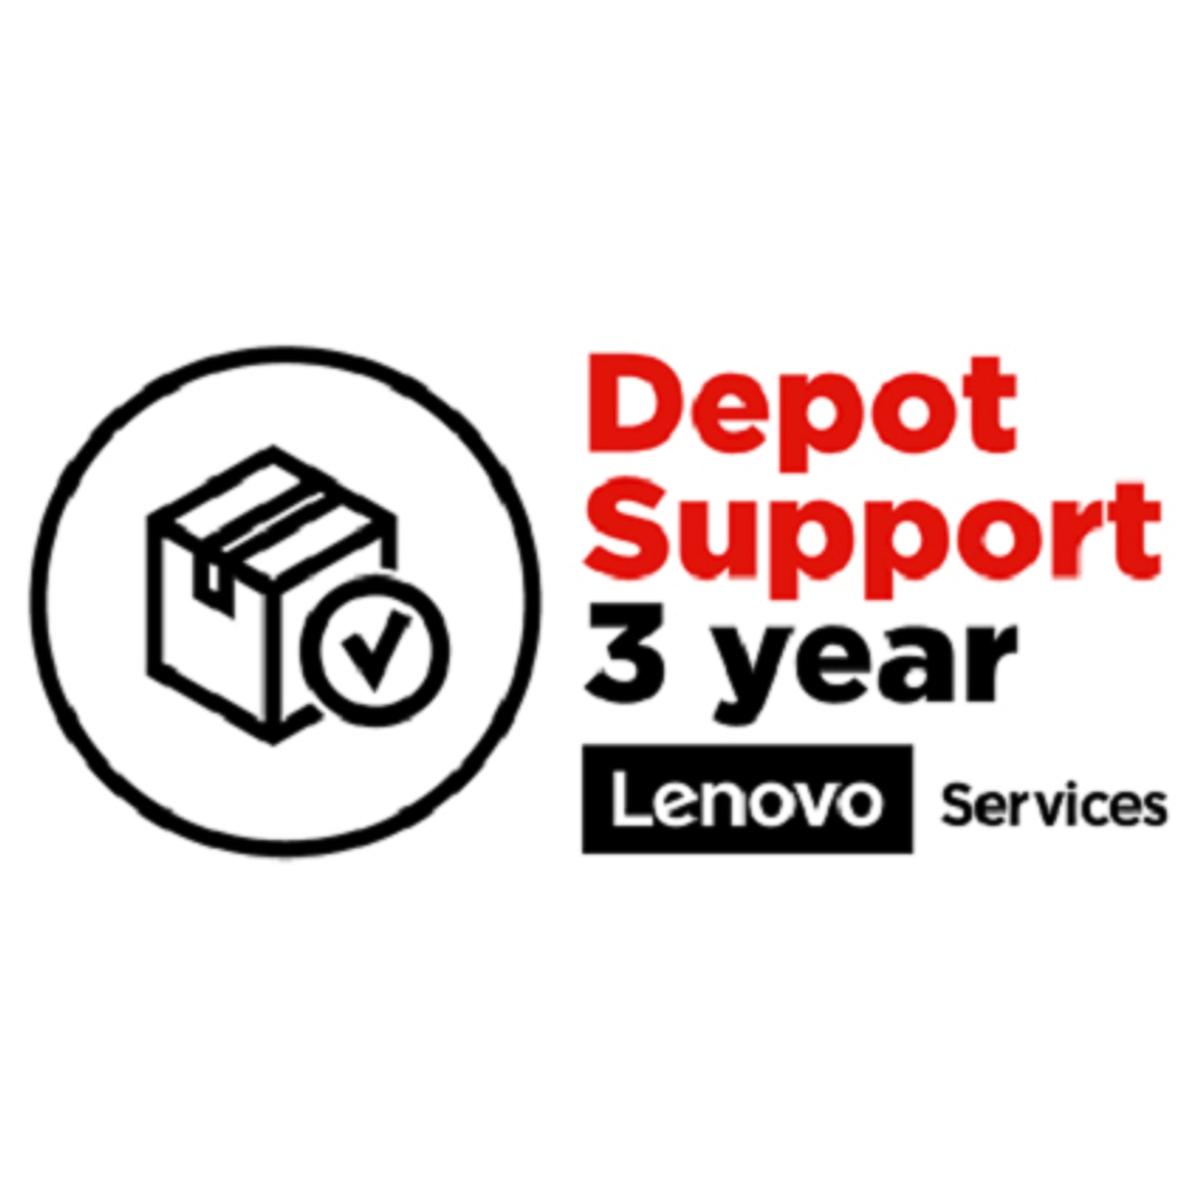 3Y Depot/CCI upgrade from 1Y Depot/CCI